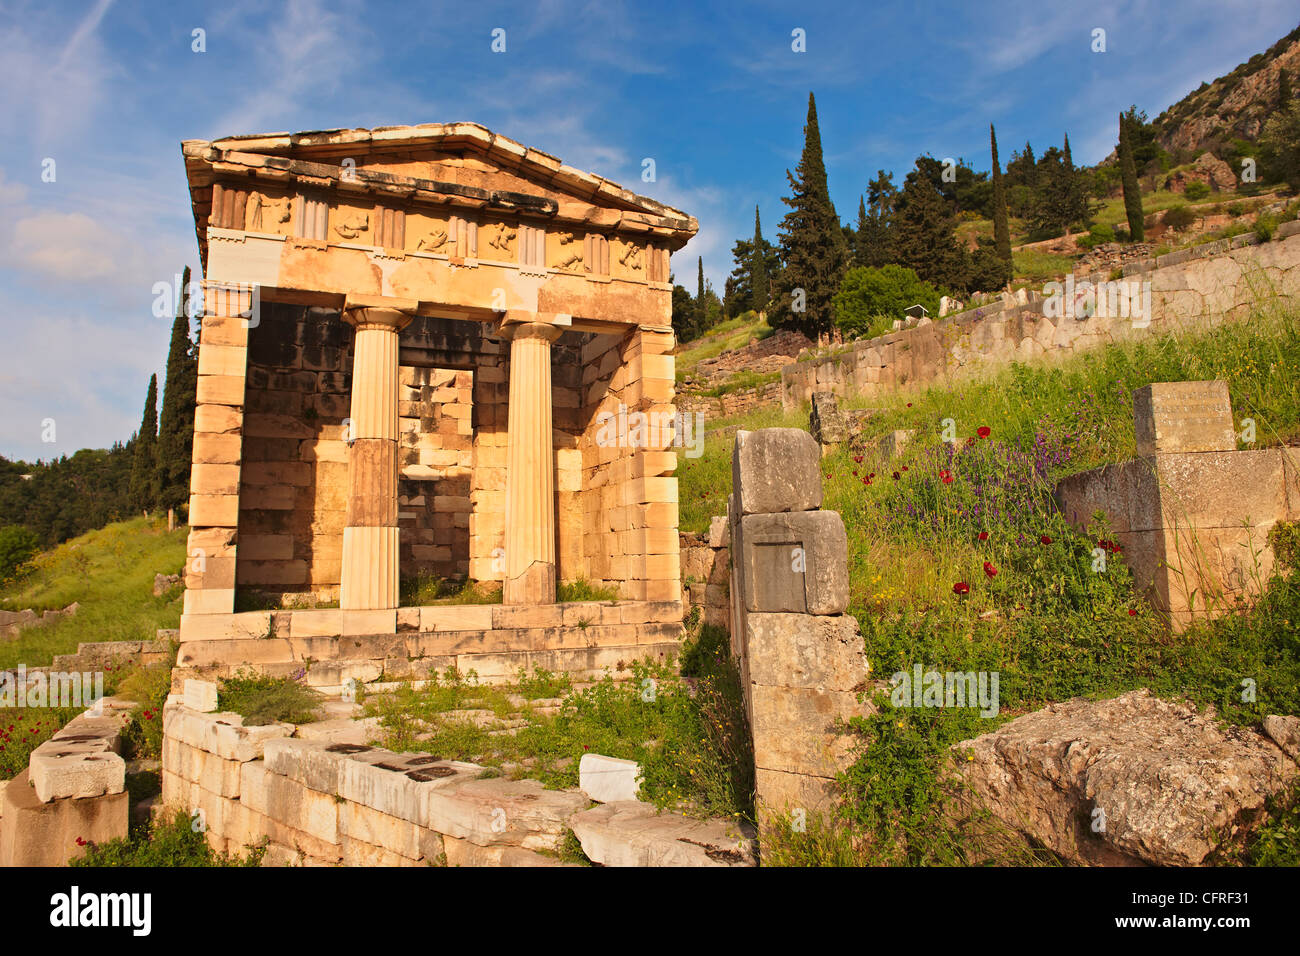 Schatzkammer von Athen, errichtet zur Erinnerung an den Sieg in der Schlacht von Marathon. Delphi, archäologische Stätte, Griechenland, Stockfoto